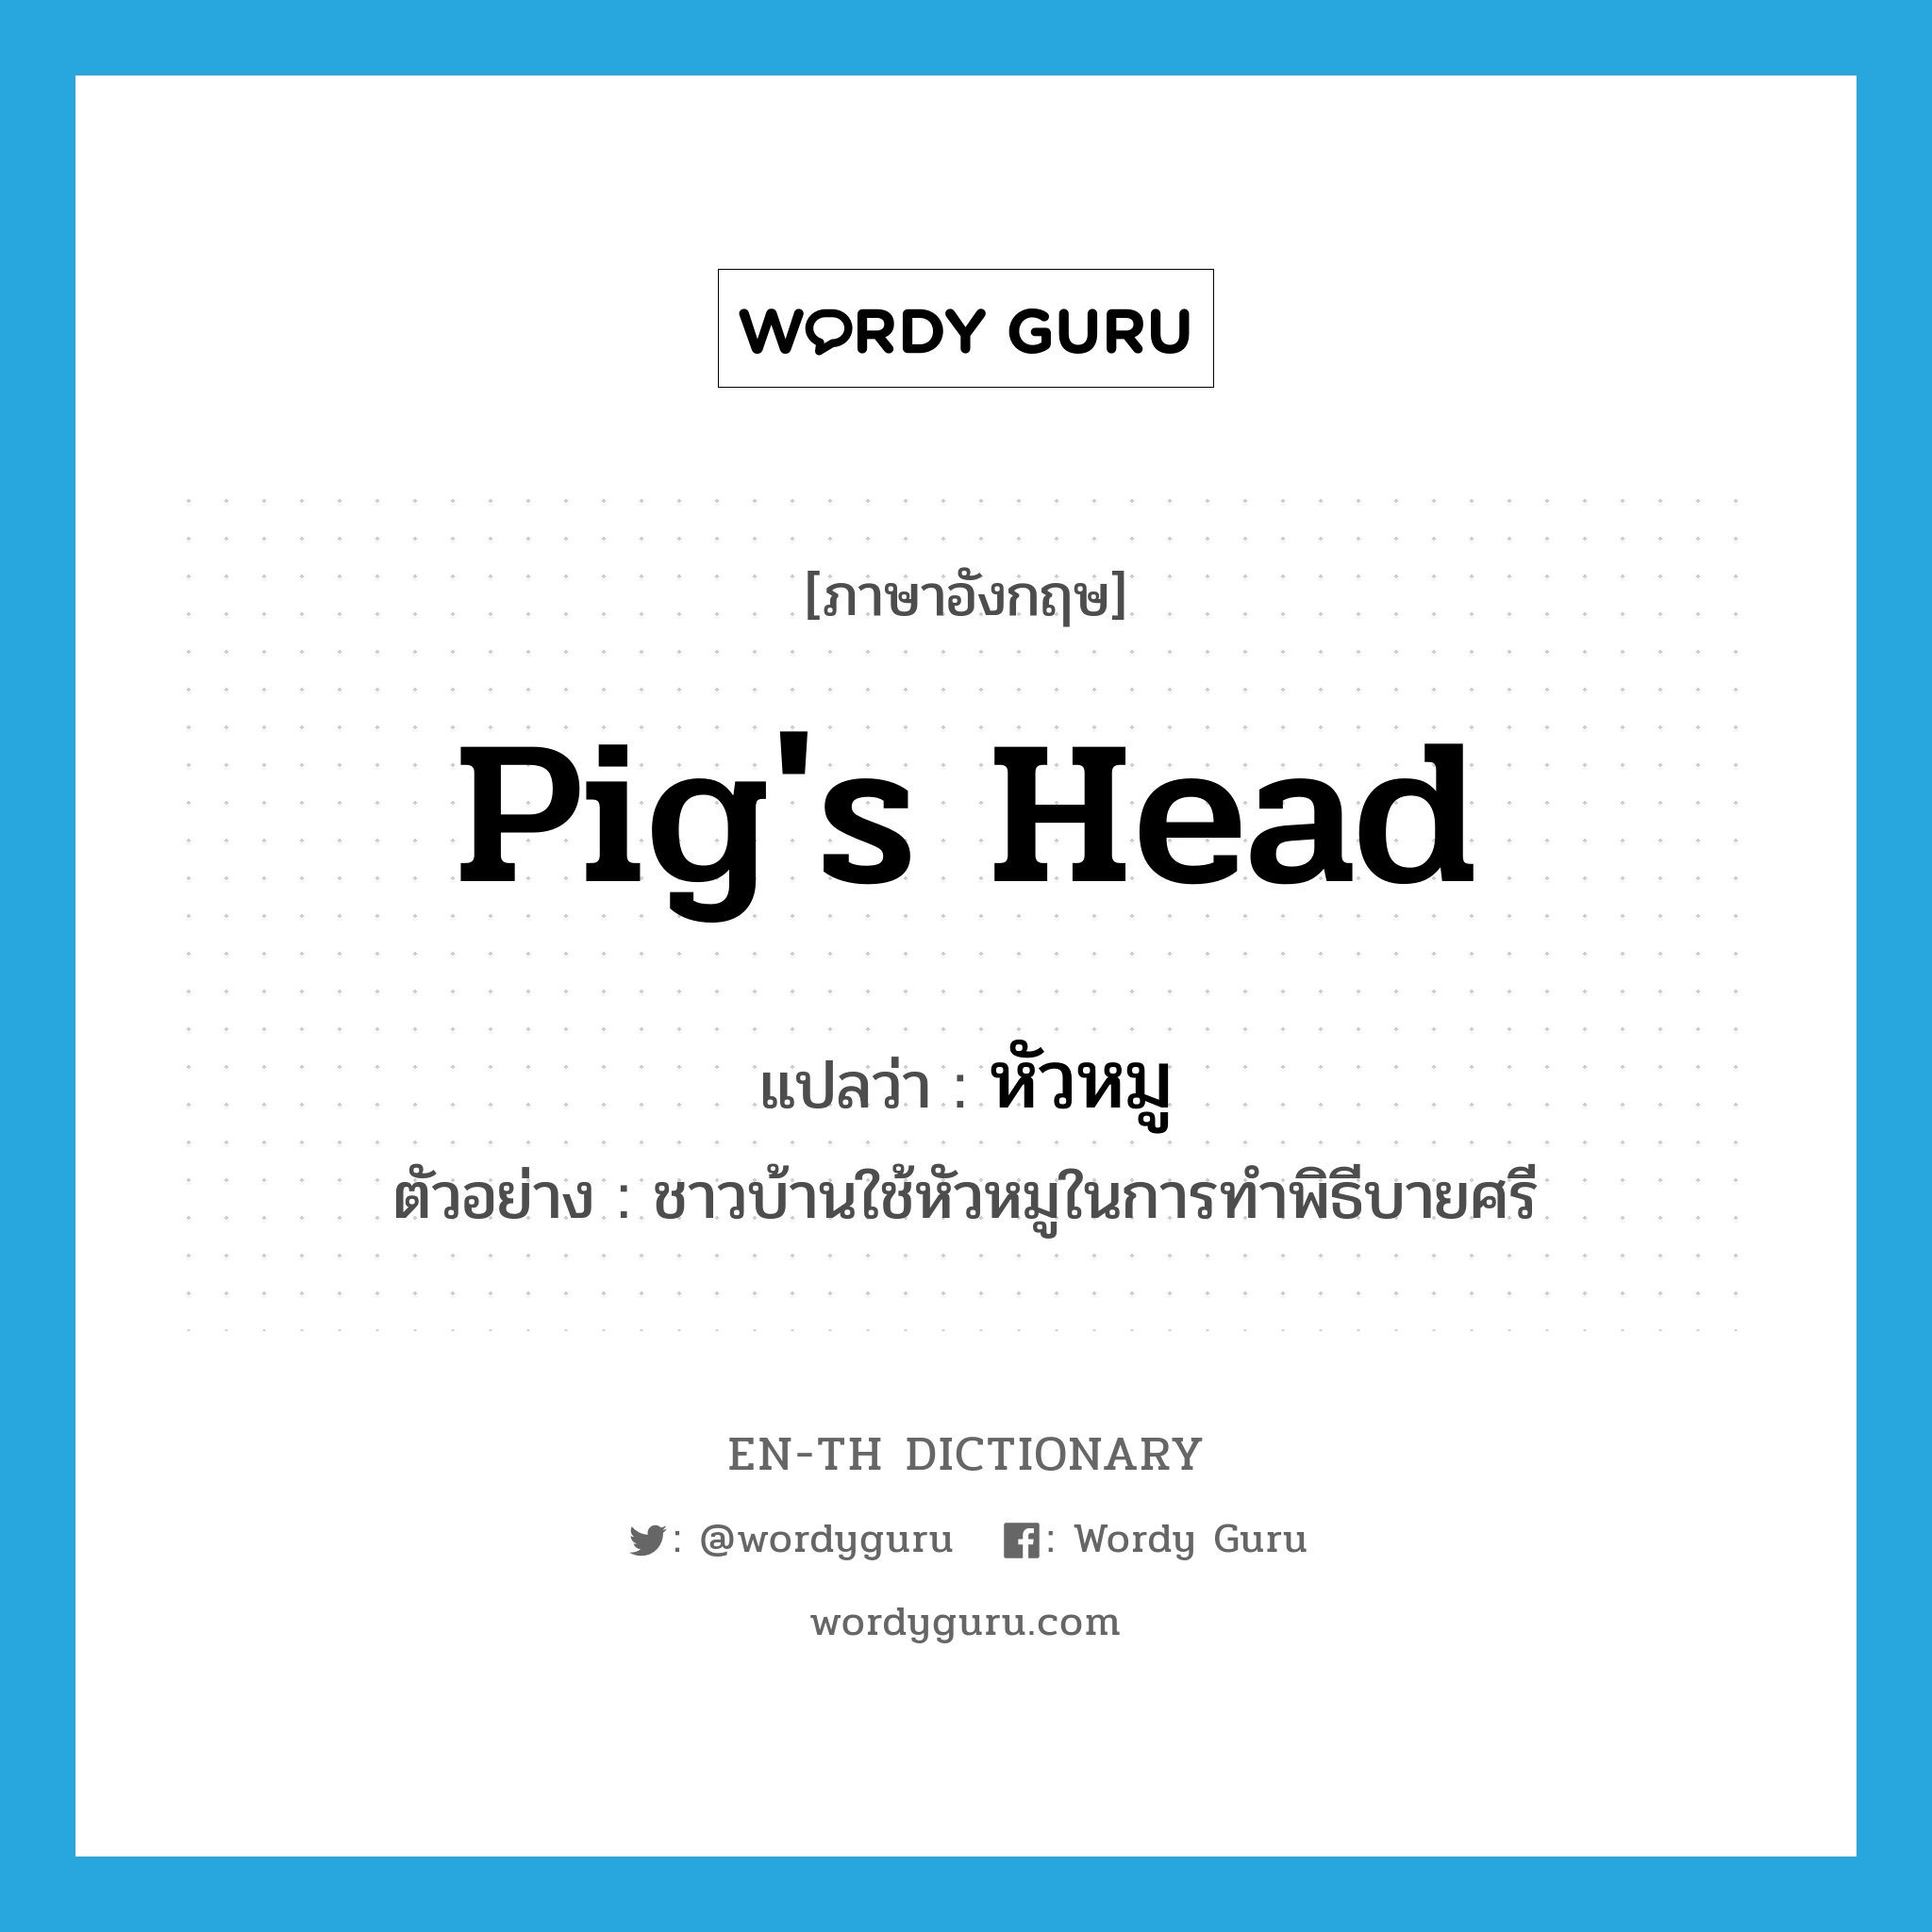 pig's head แปลว่า?, คำศัพท์ภาษาอังกฤษ pig's head แปลว่า หัวหมู ประเภท N ตัวอย่าง ชาวบ้านใช้หัวหมูในการทำพิธีบายศรี หมวด N